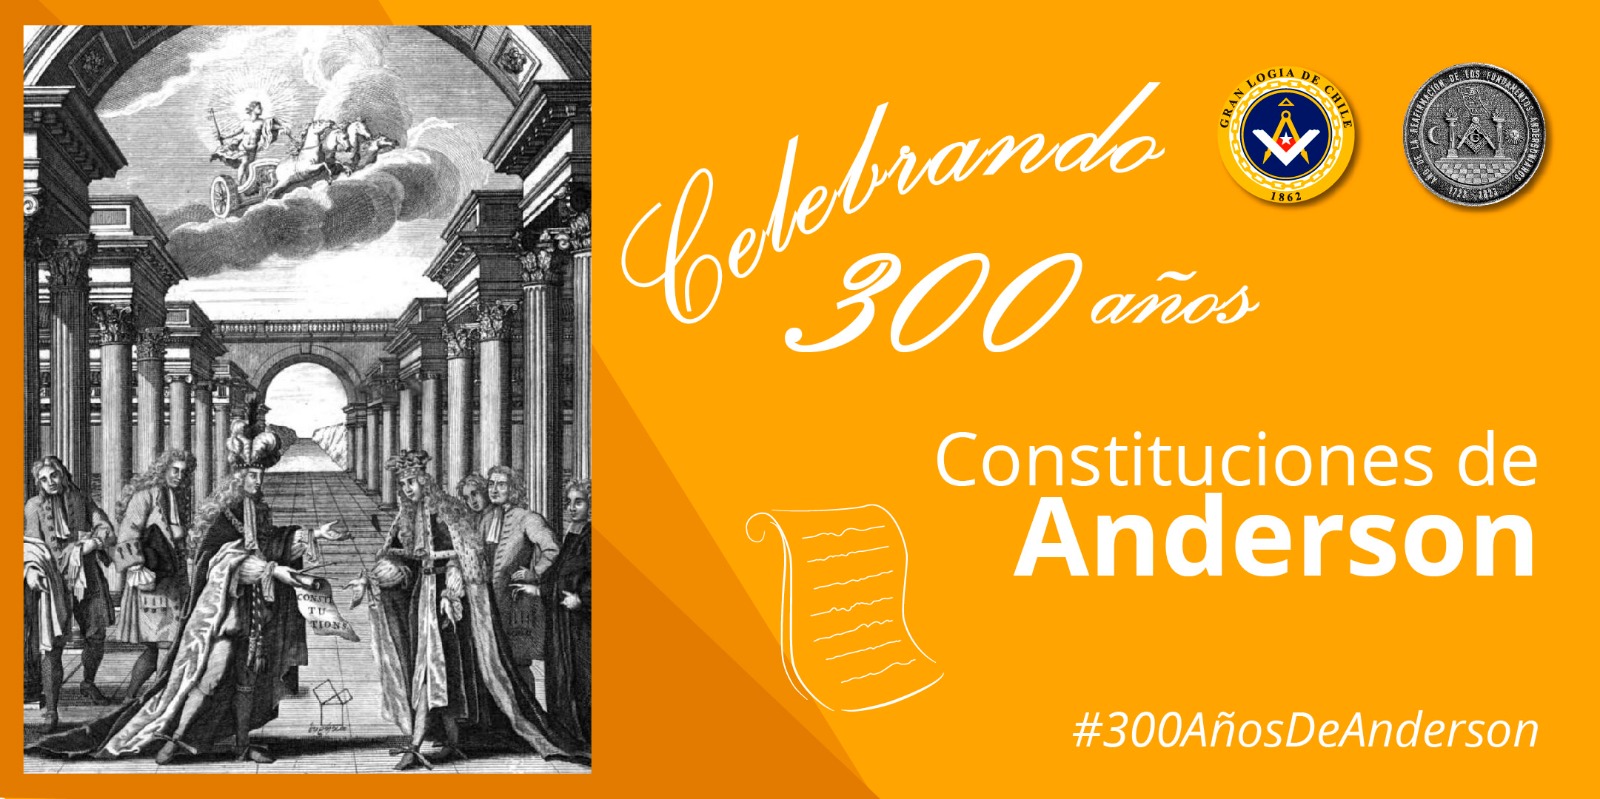 Gran Logia de Chile celebra los 300 años de la publicación de las Constituciones de Anderson